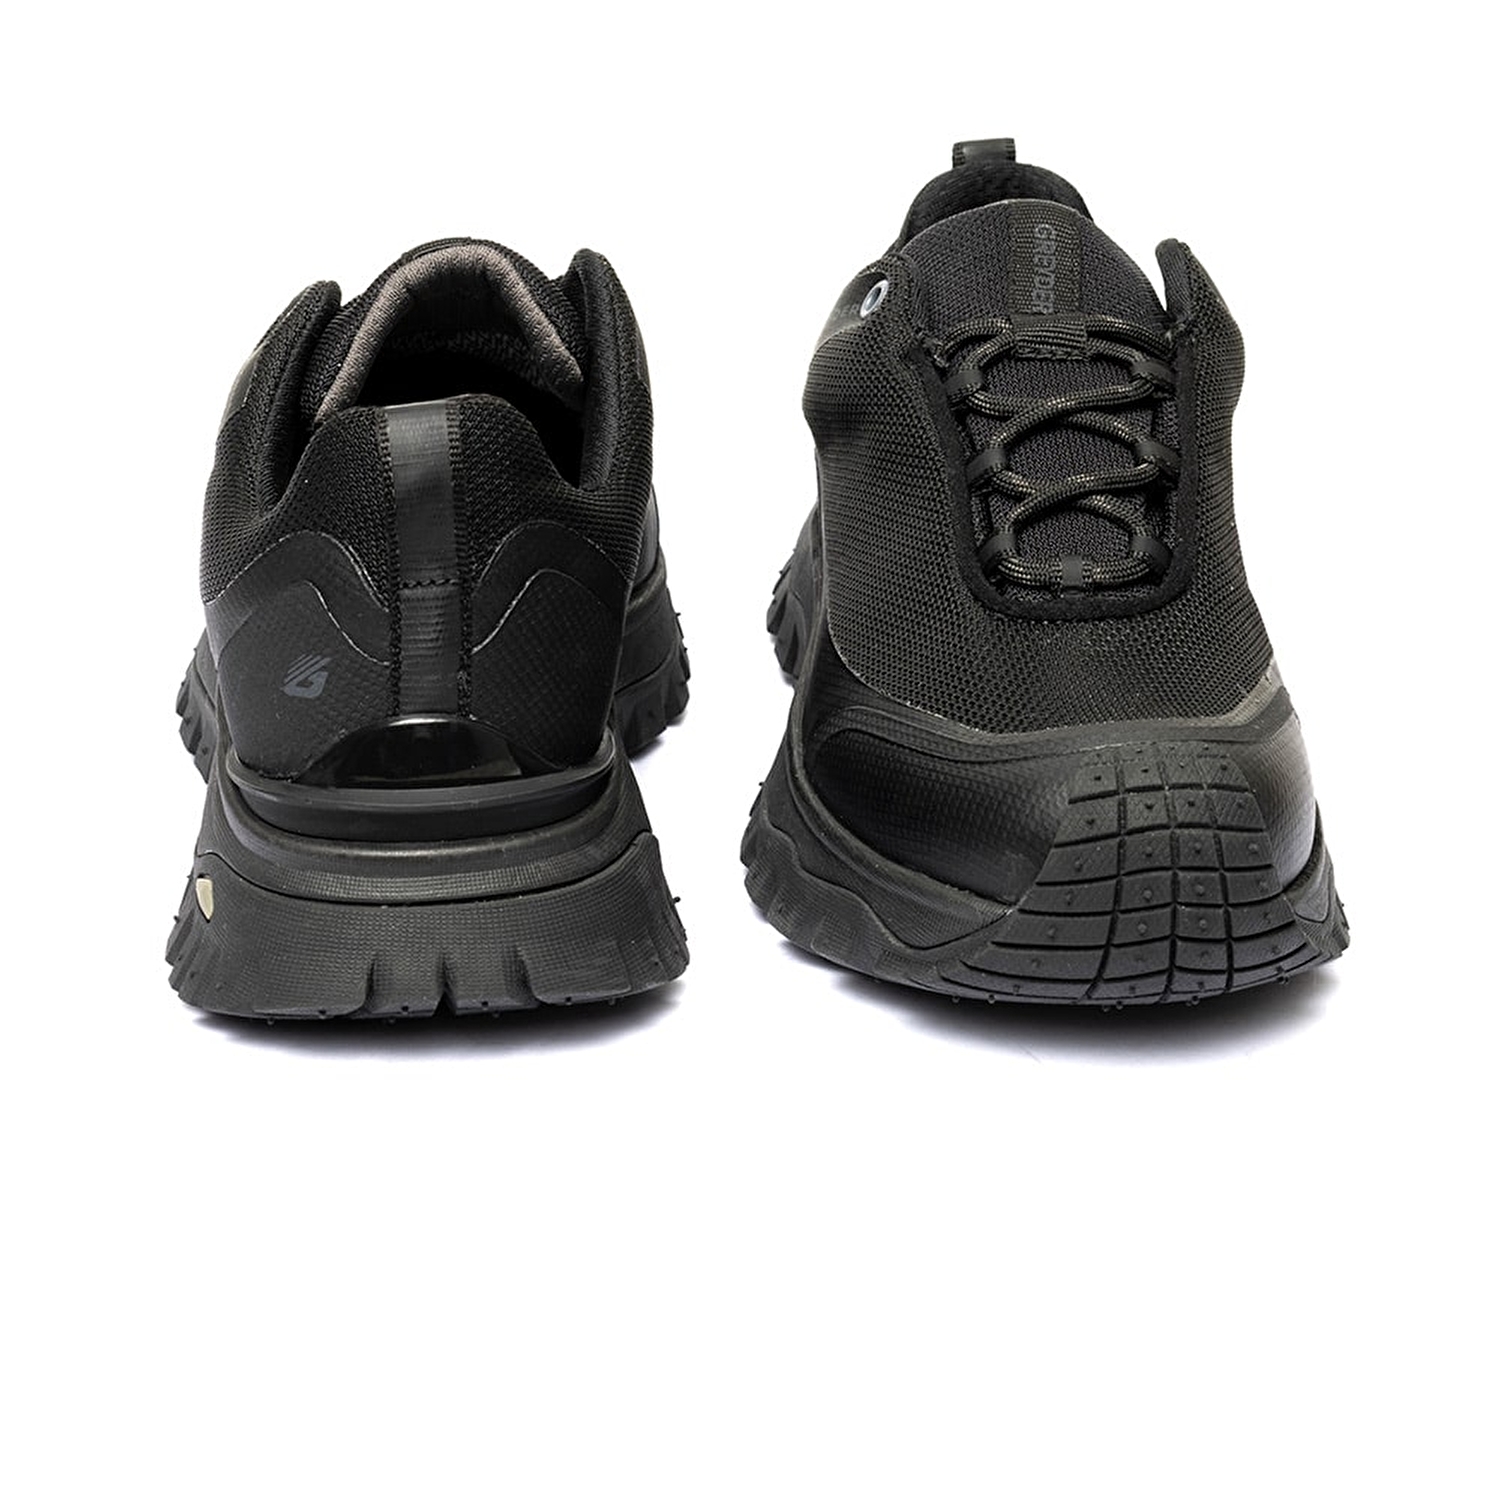 Kadın Siyah Su Geçirmez Outdoor Ayakkabı 3K2GA16357-6